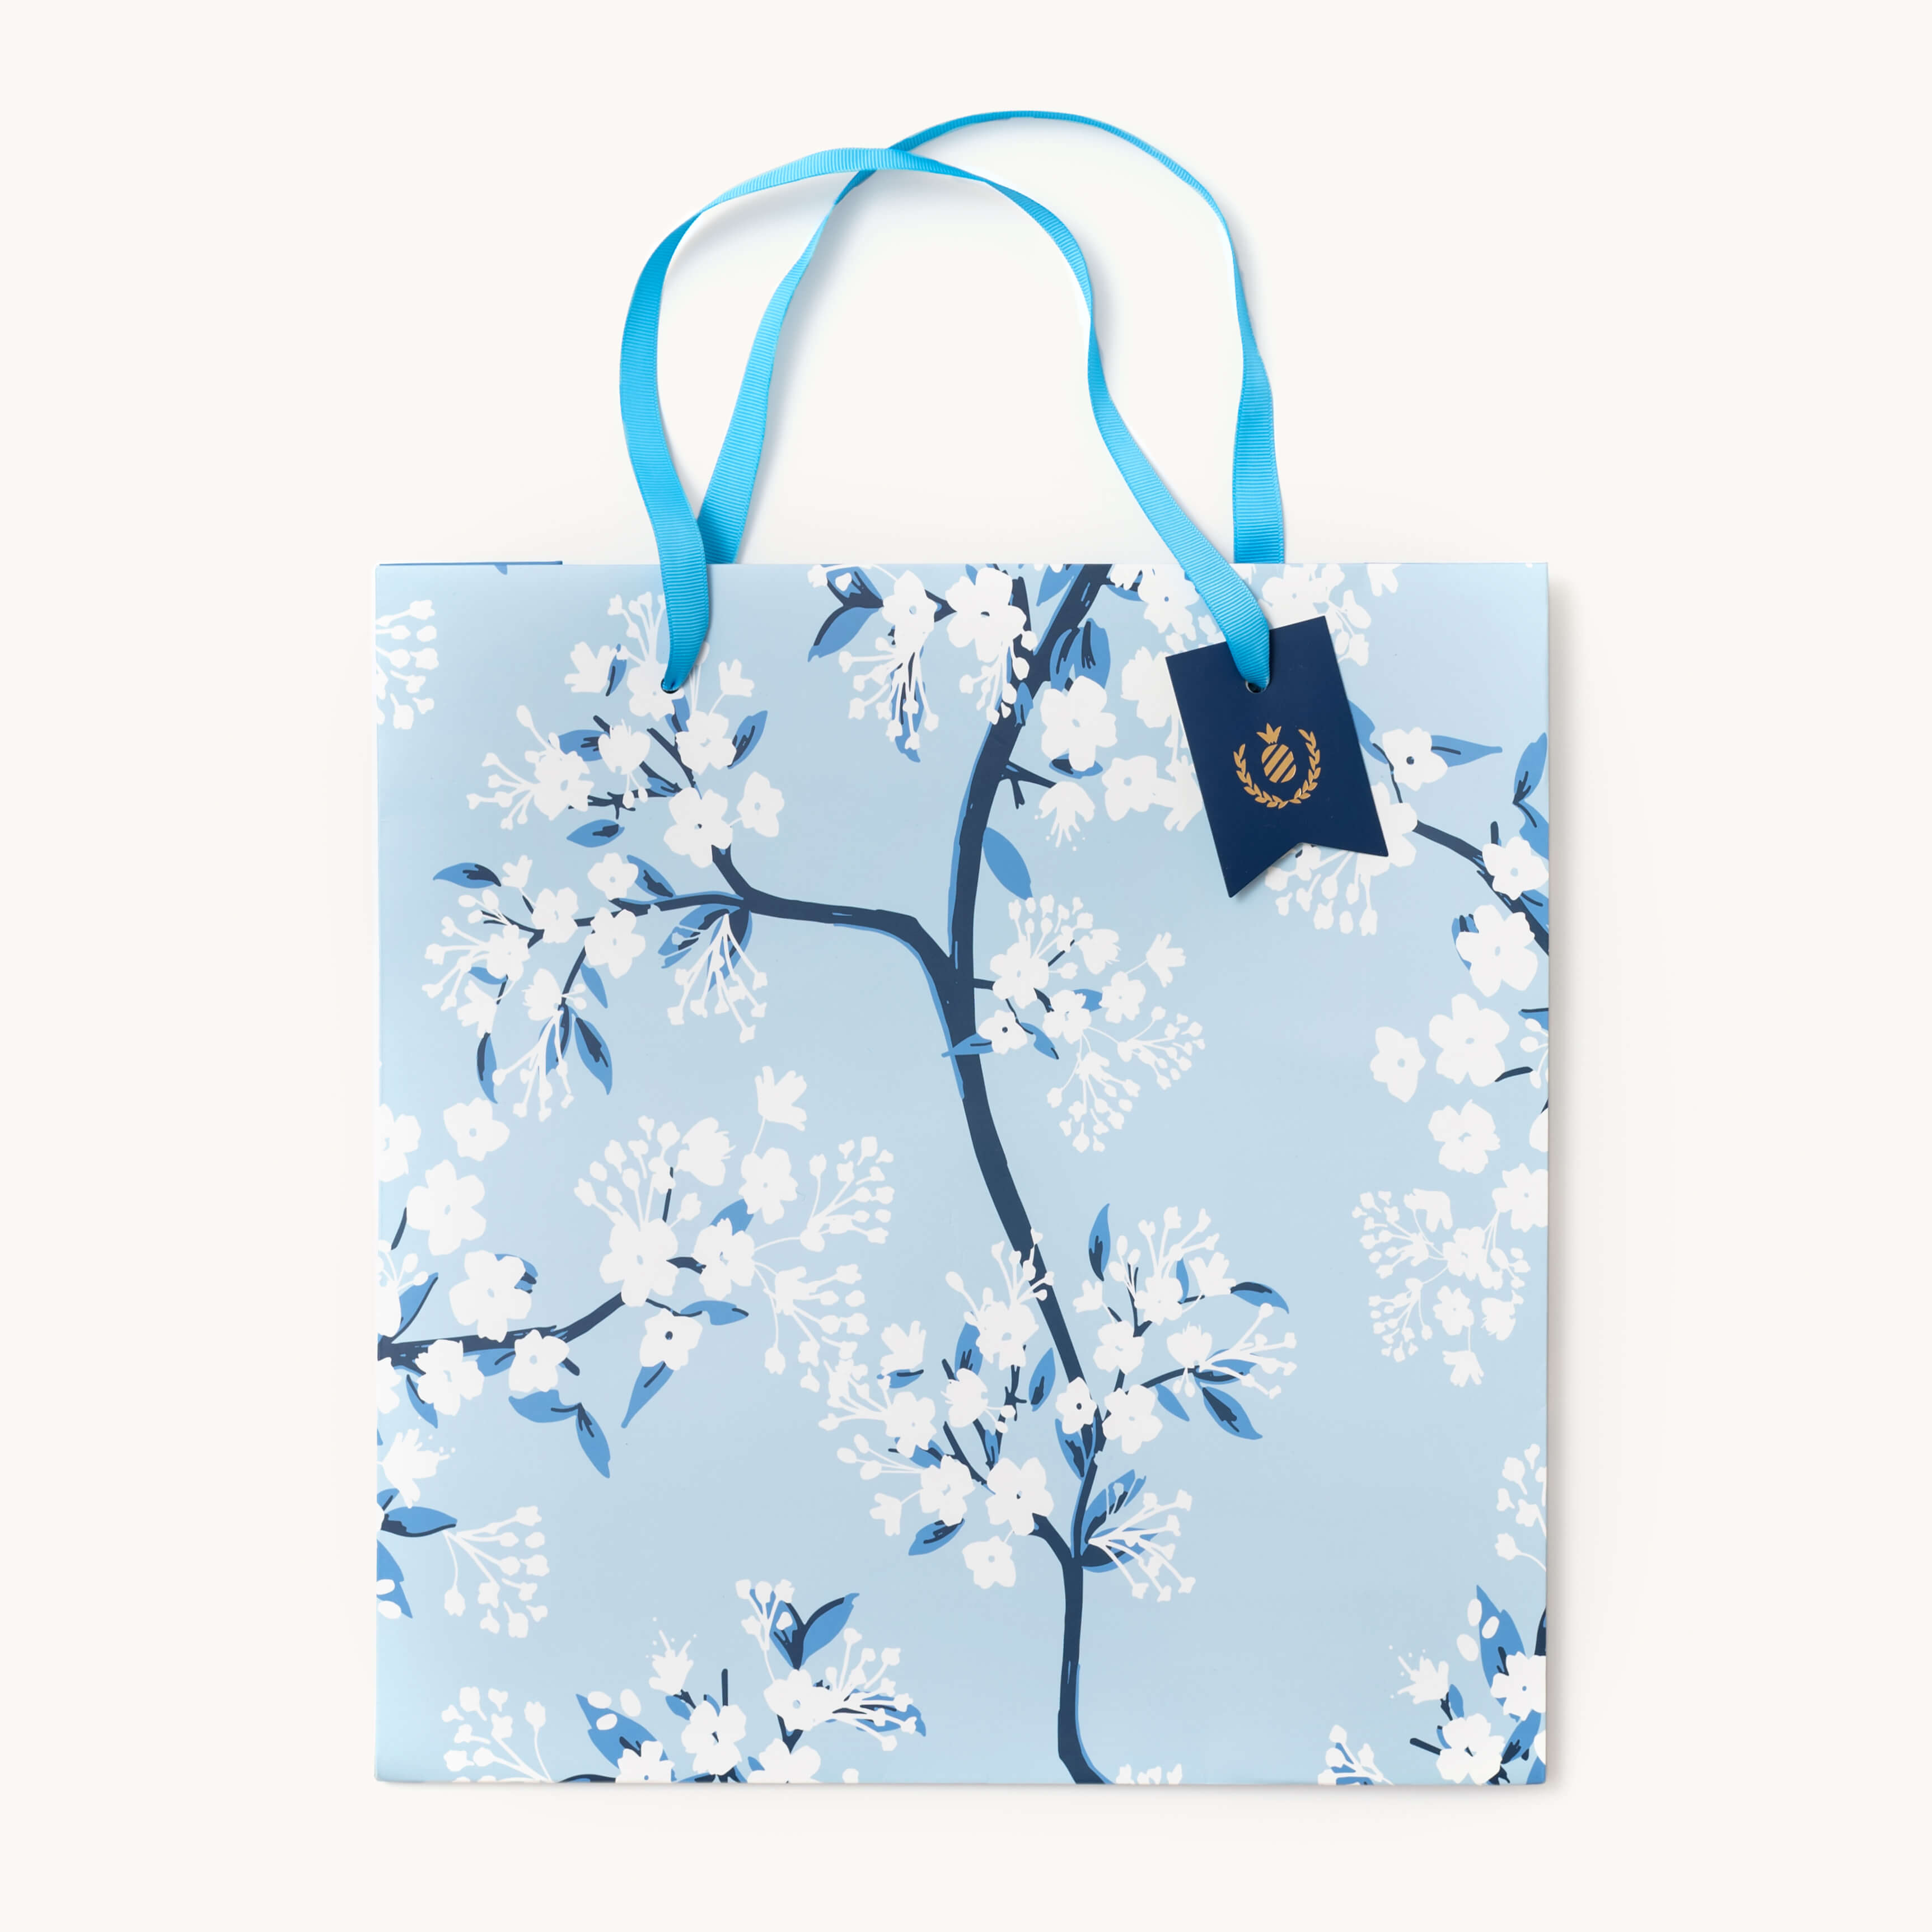 White Cherry Blossom Tote Bag